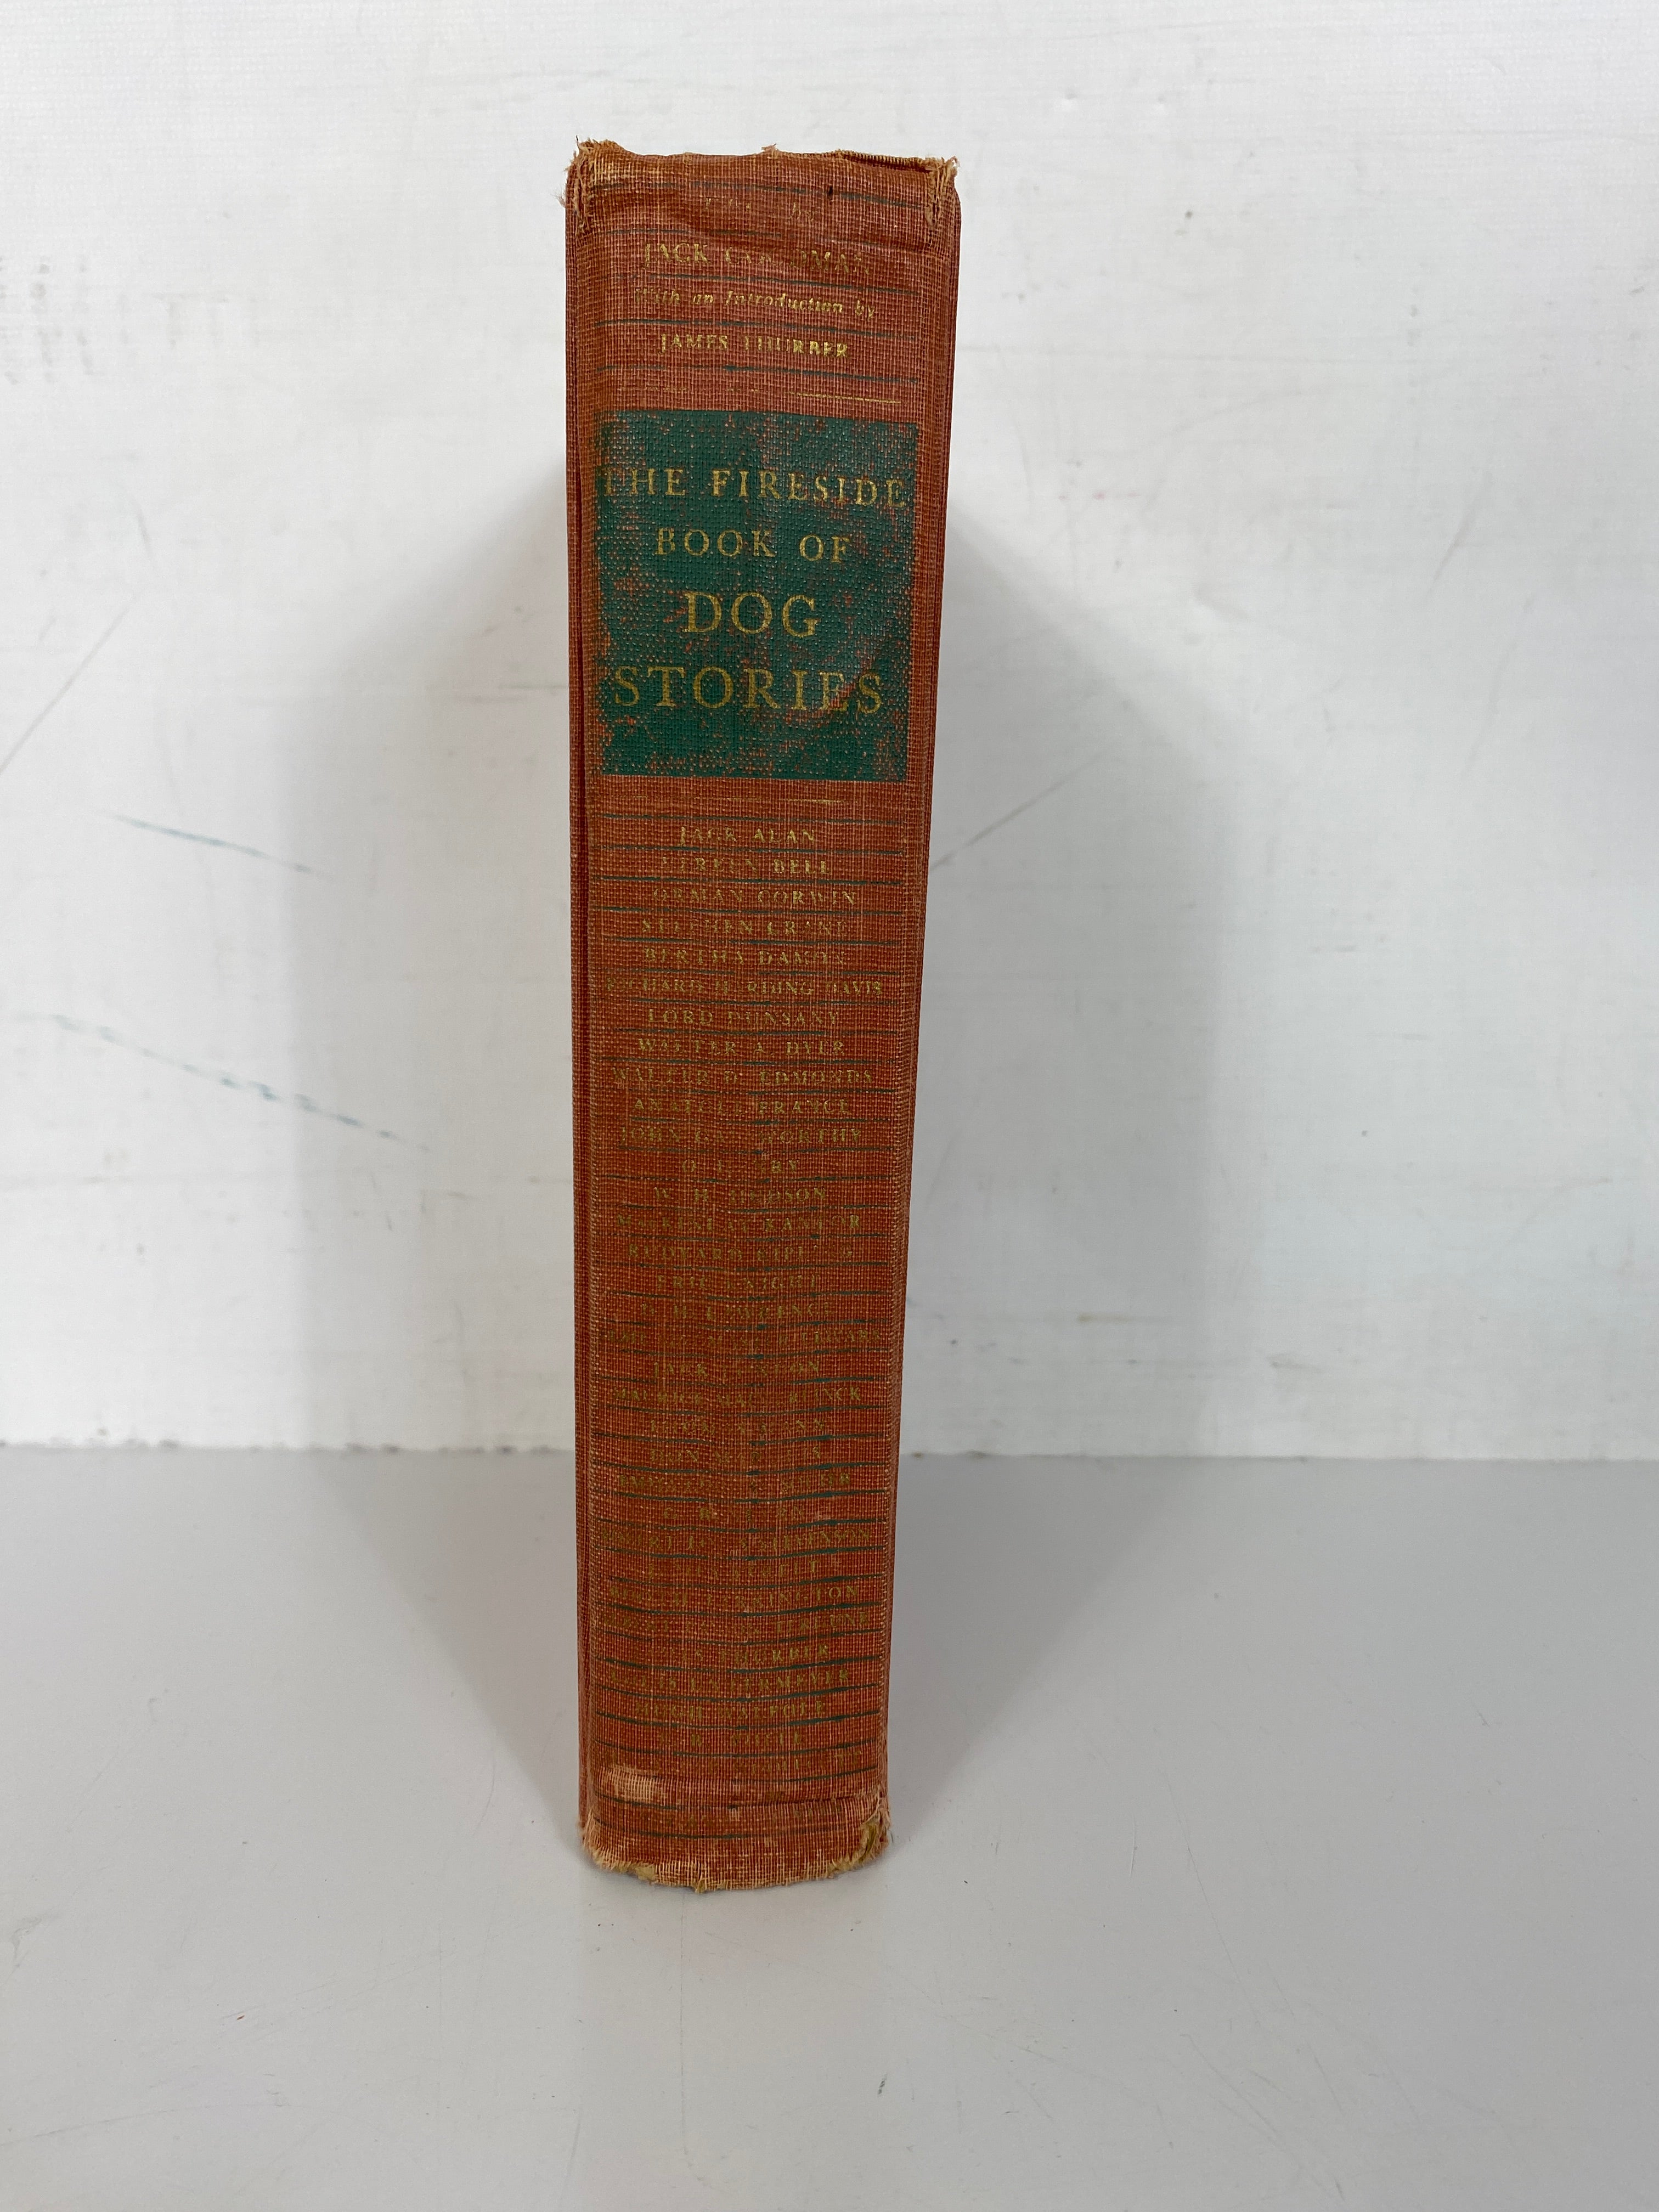 Lot of 3 Dog Stories Kazan/Dogsled Danger/The Fireside Book 1941-1956 HC